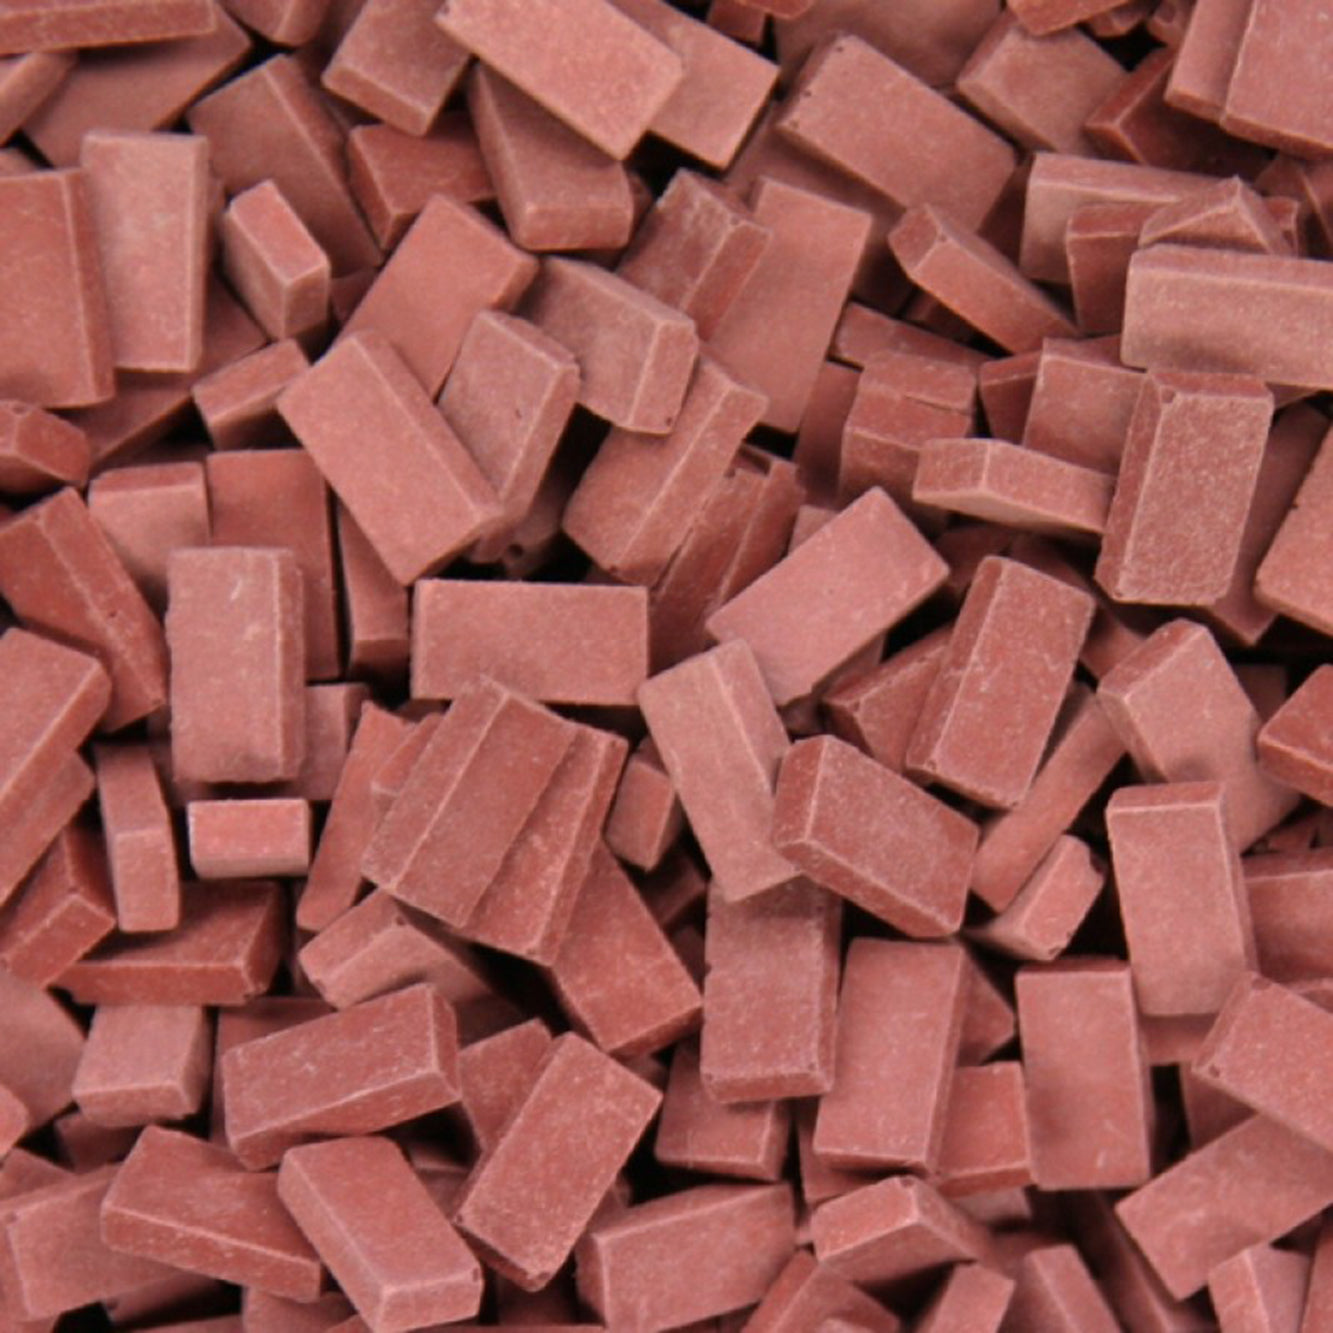 JL23029 Juweela Bricks in Dark Brick Red - 1000 pieces